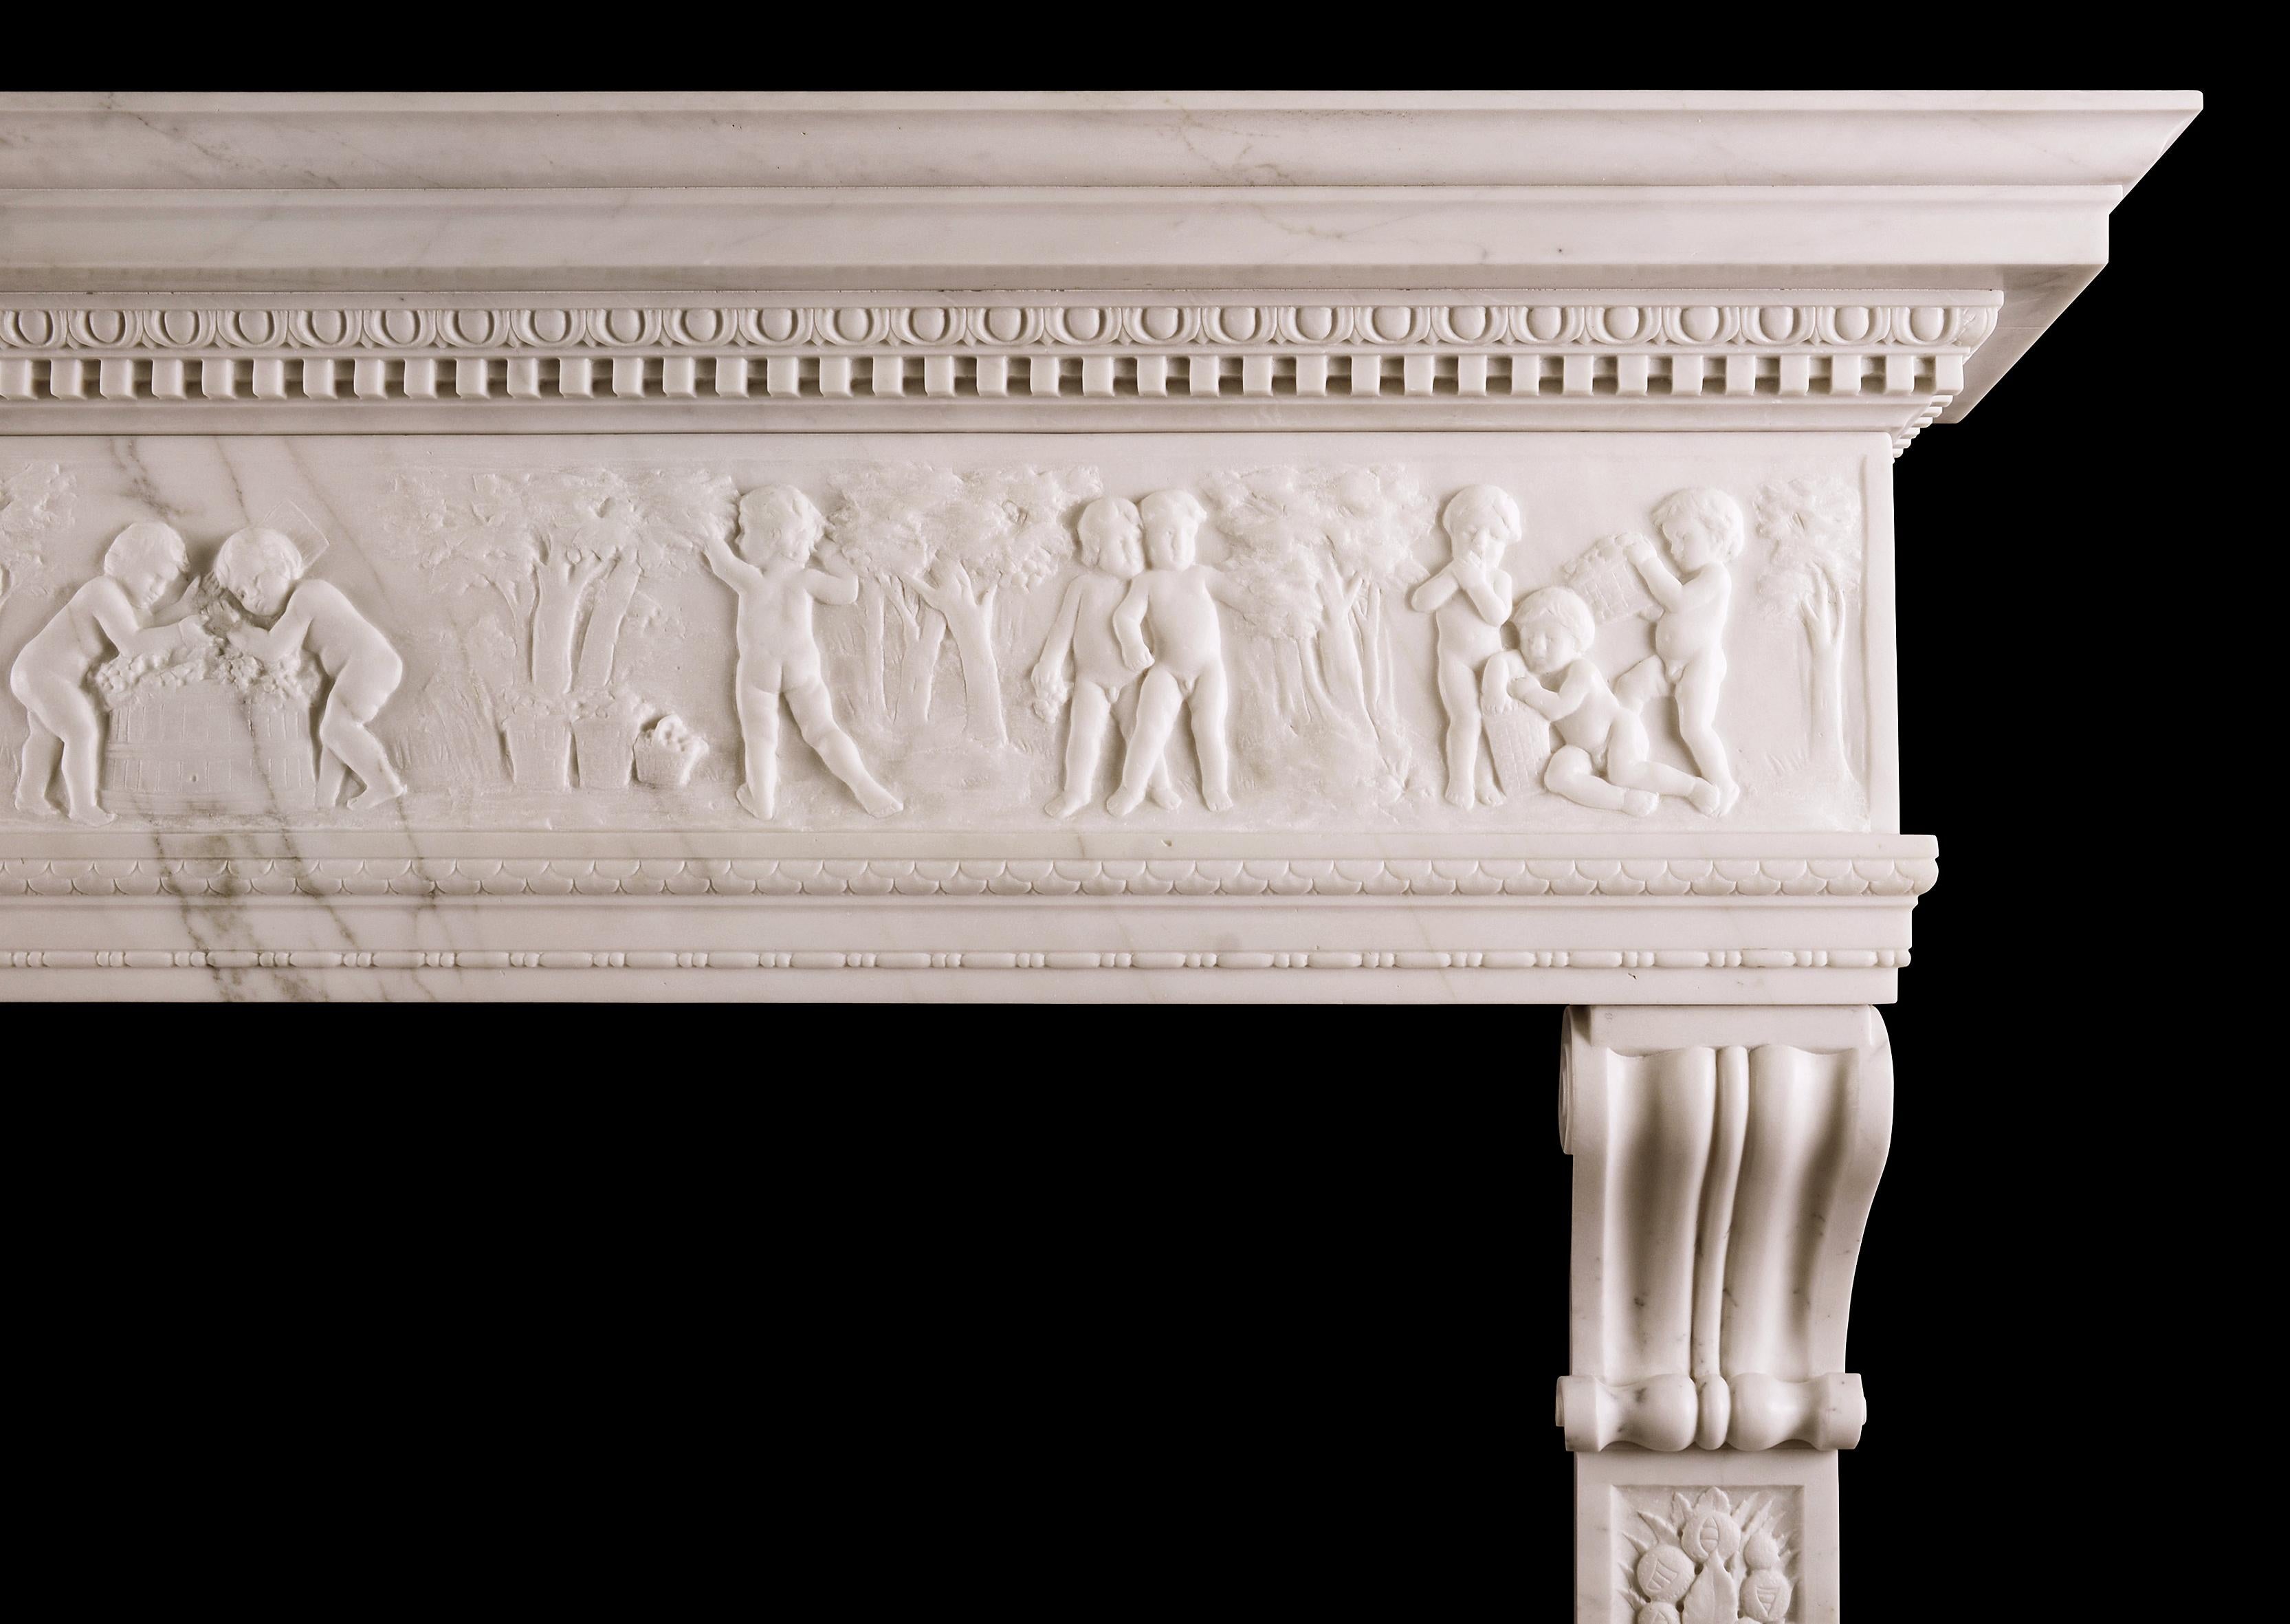 Une très belle cheminée statuaire en marbre blanc de style Renaissance italienne. Les jambages sculptés présentent des amphores classiques surmontées de fruits, de glands, de rubans et de feuillages, et sont surmontés de consoles à volutes finement